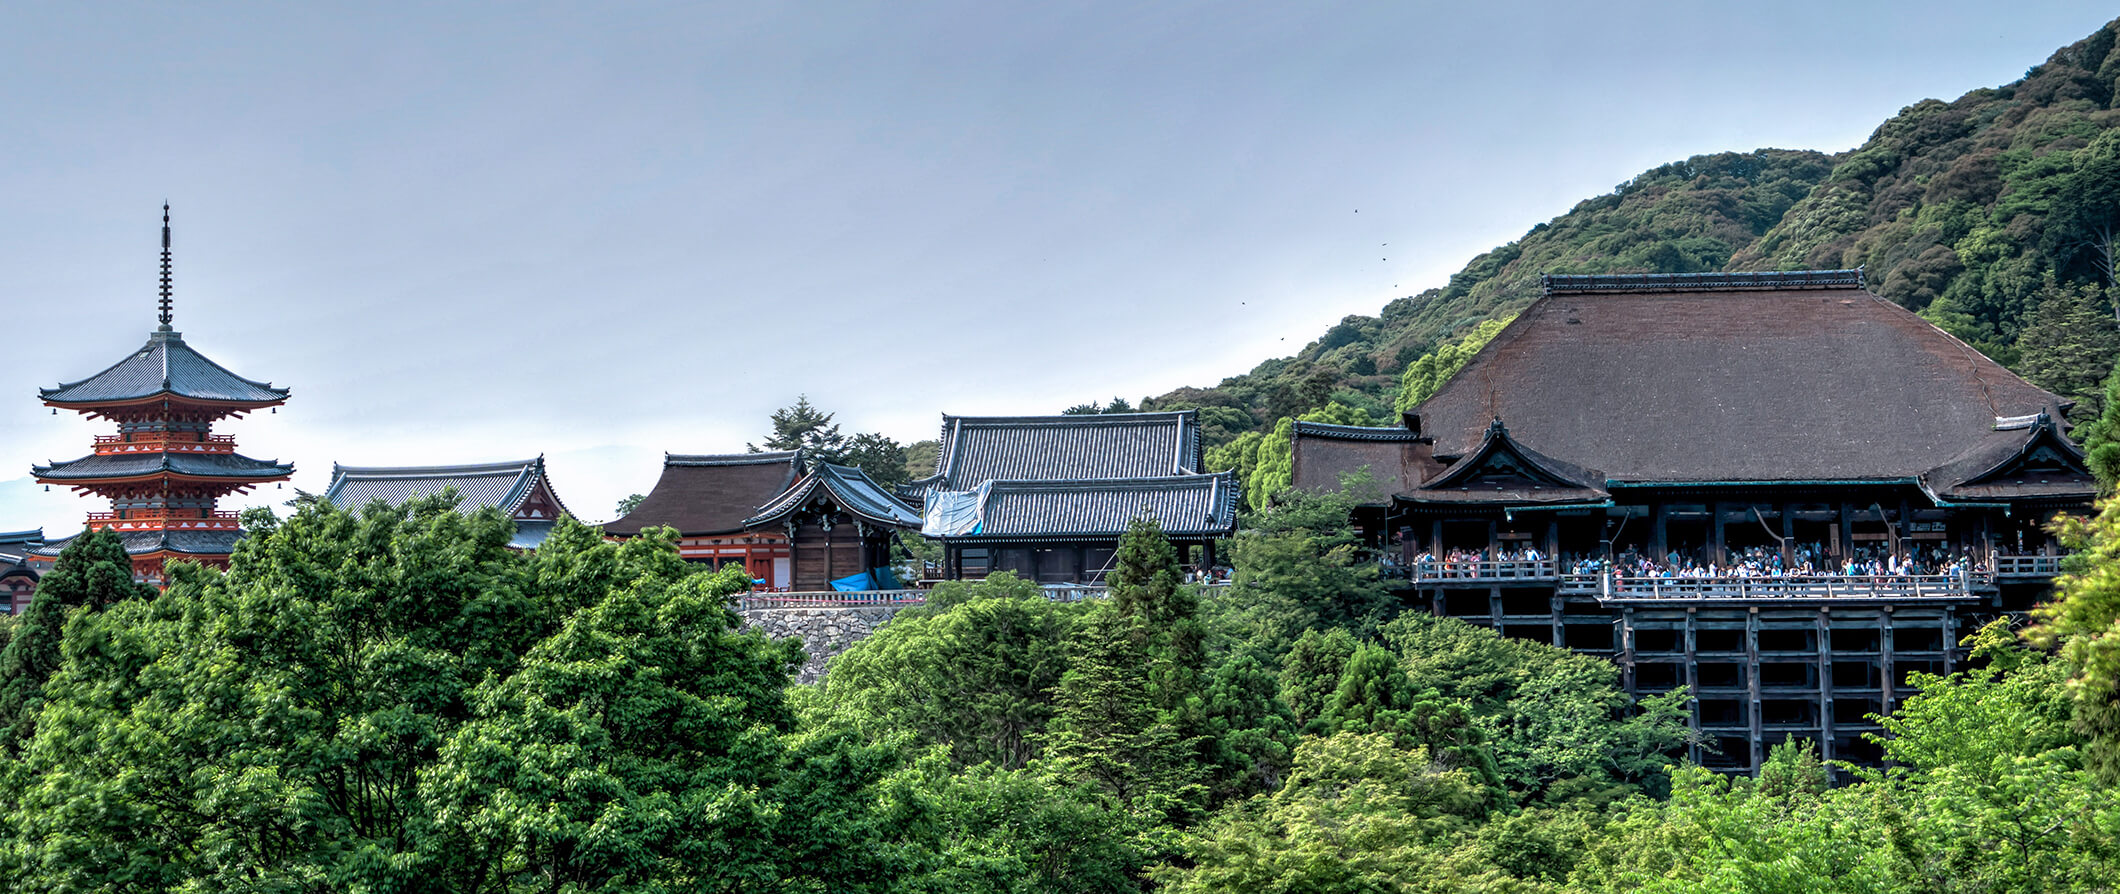 Houses in Kyoto in Japan